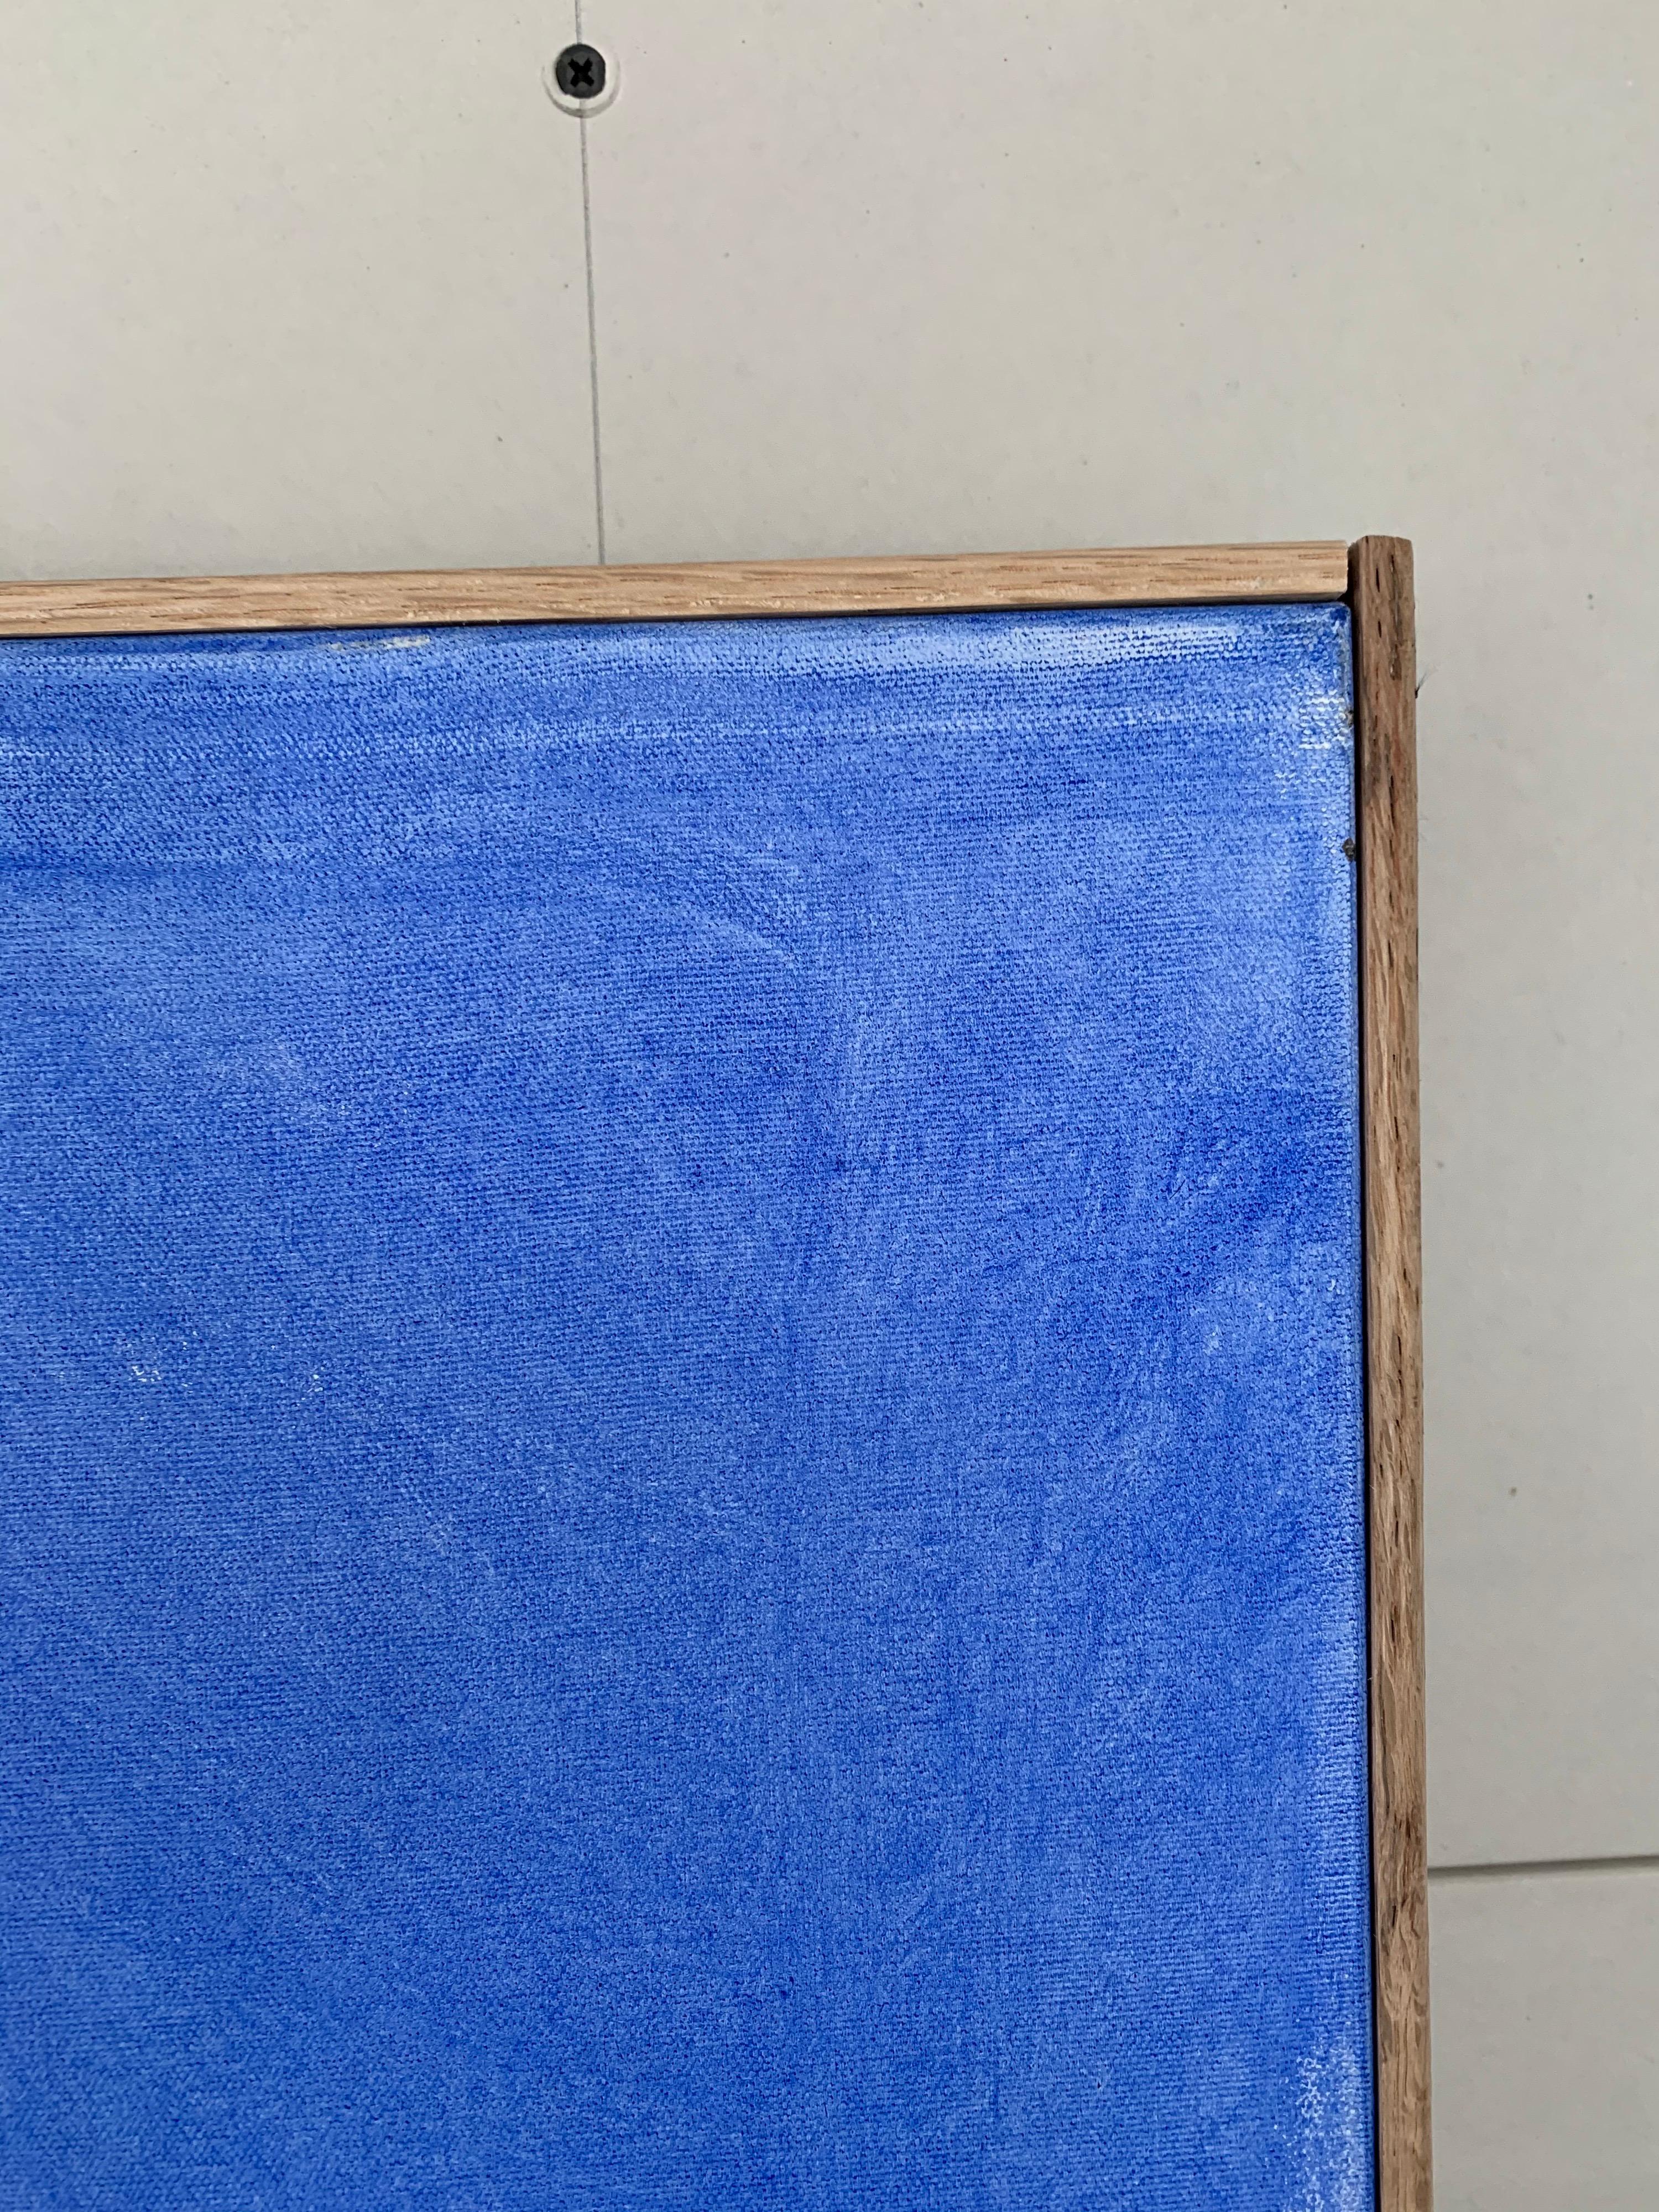 Dieses sehr große (5 x 4 Fuß) Öl auf Leinwand mit Variationen von blauen Tönen, die einfach und elegant ist, mit einem sauberen Eichenrahmen gerahmt, wie von Künstler getan. Hier in vertikaler Ausführung gezeigt, kann aber auch horizontal aufgehängt